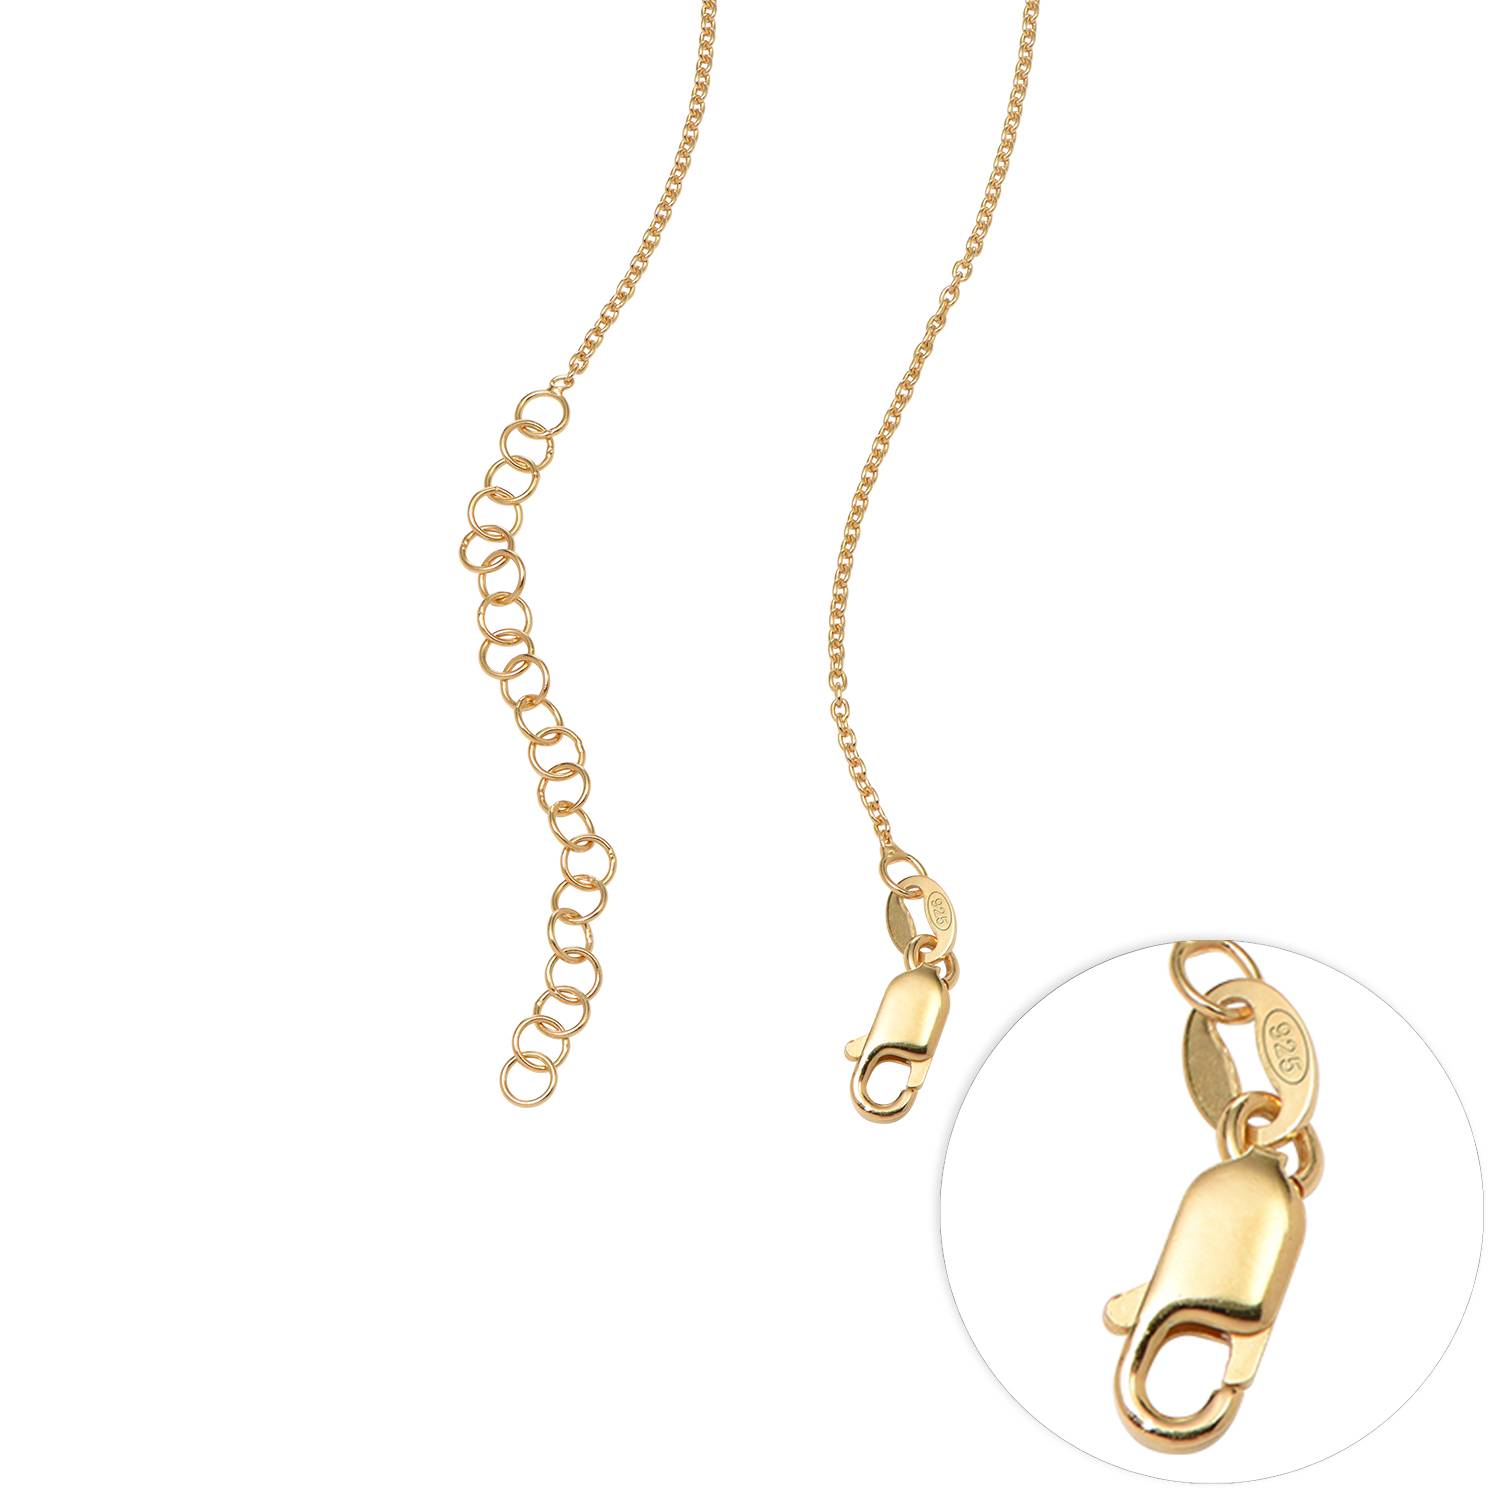 Floret Photo Pendant Necklace in 18k Gold Vermeil-3 product photo